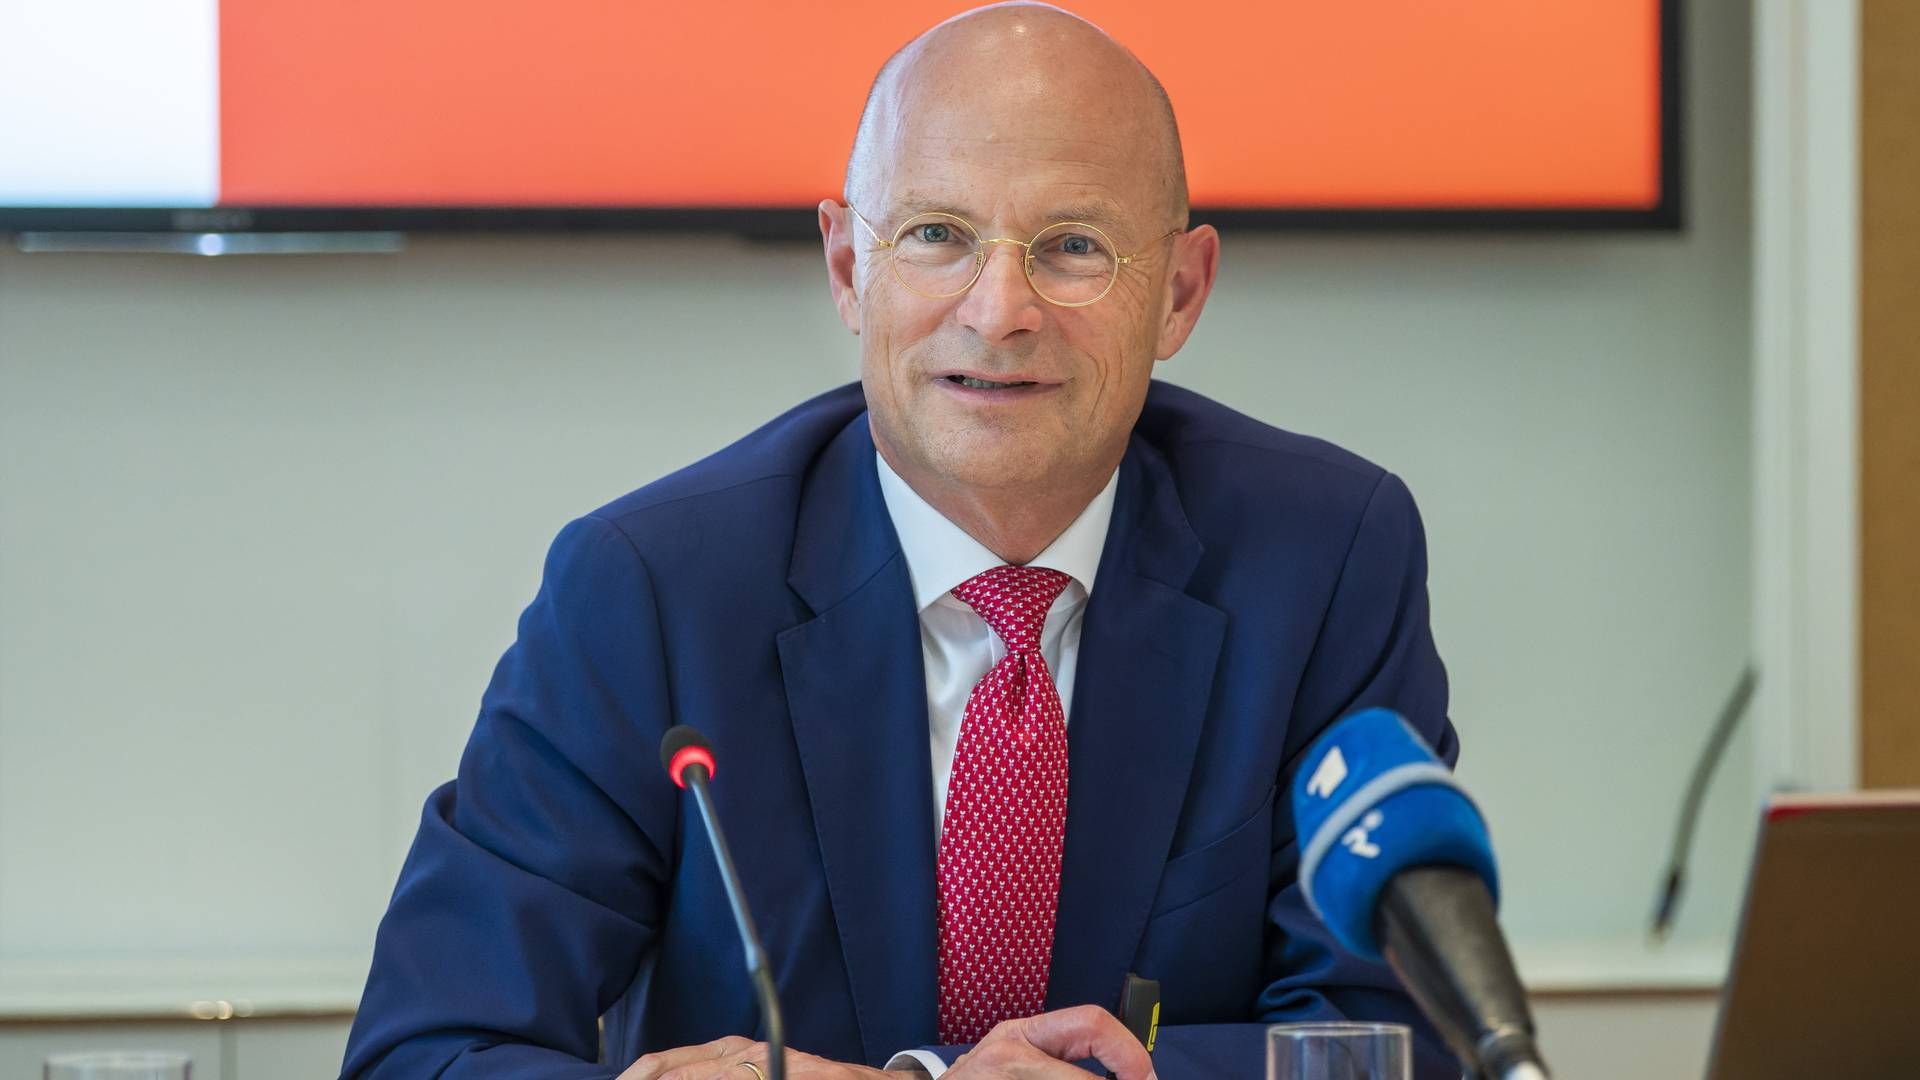 Seit Jahresbeginn neuer Sparkassenpräsident: Ulrich Reuter | Foto: picture alliance / Stephan Goerlich | Stephan Goerlich